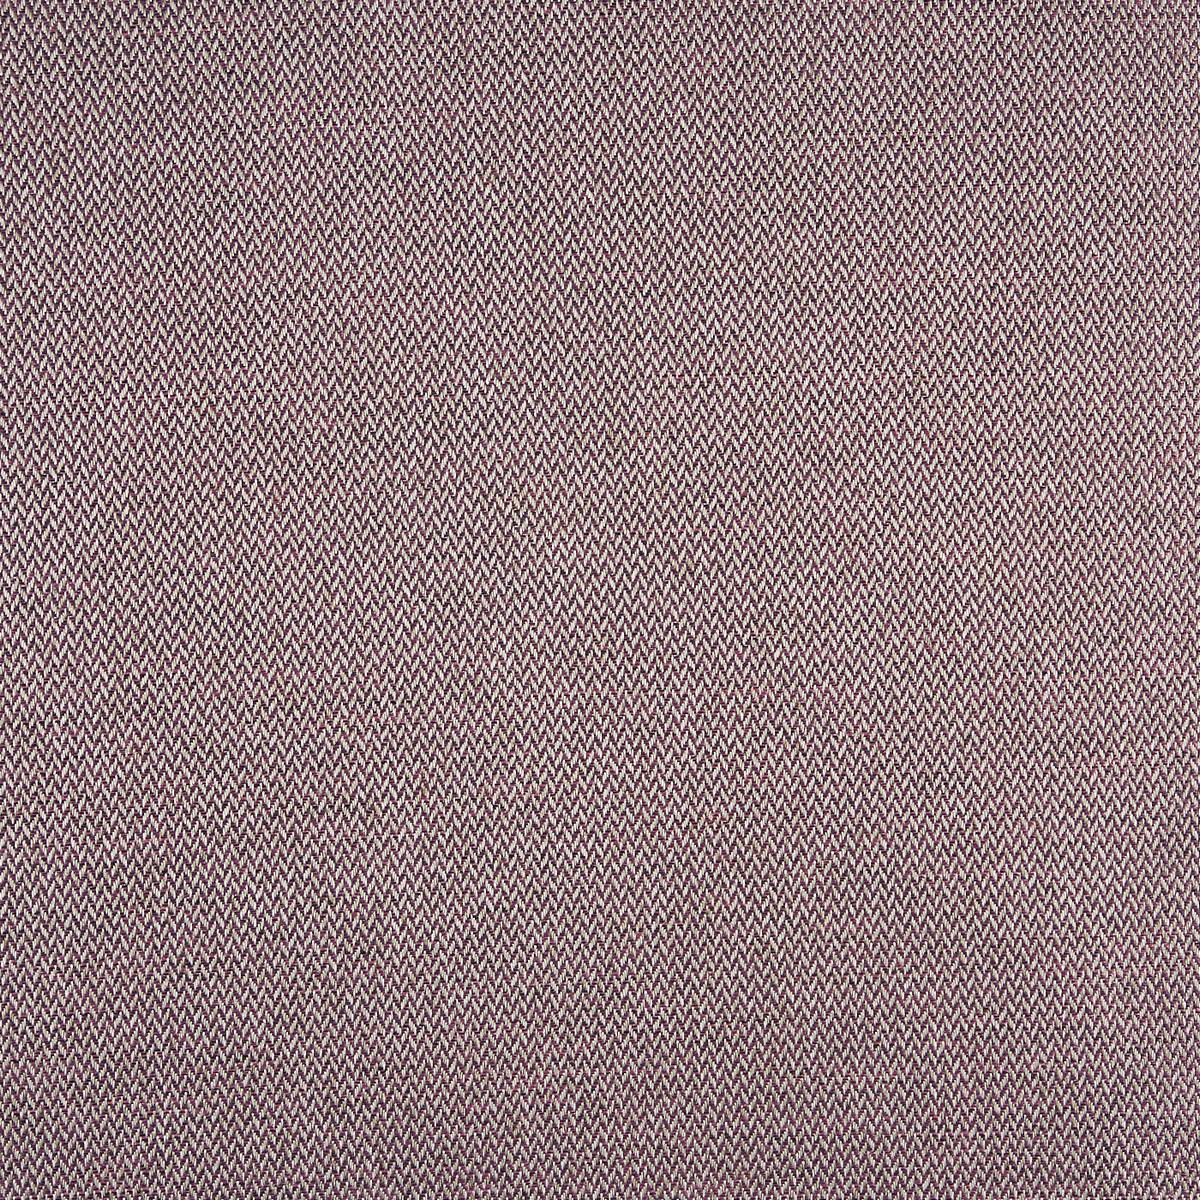 Plait Grape Fabric by Prestigious Textiles